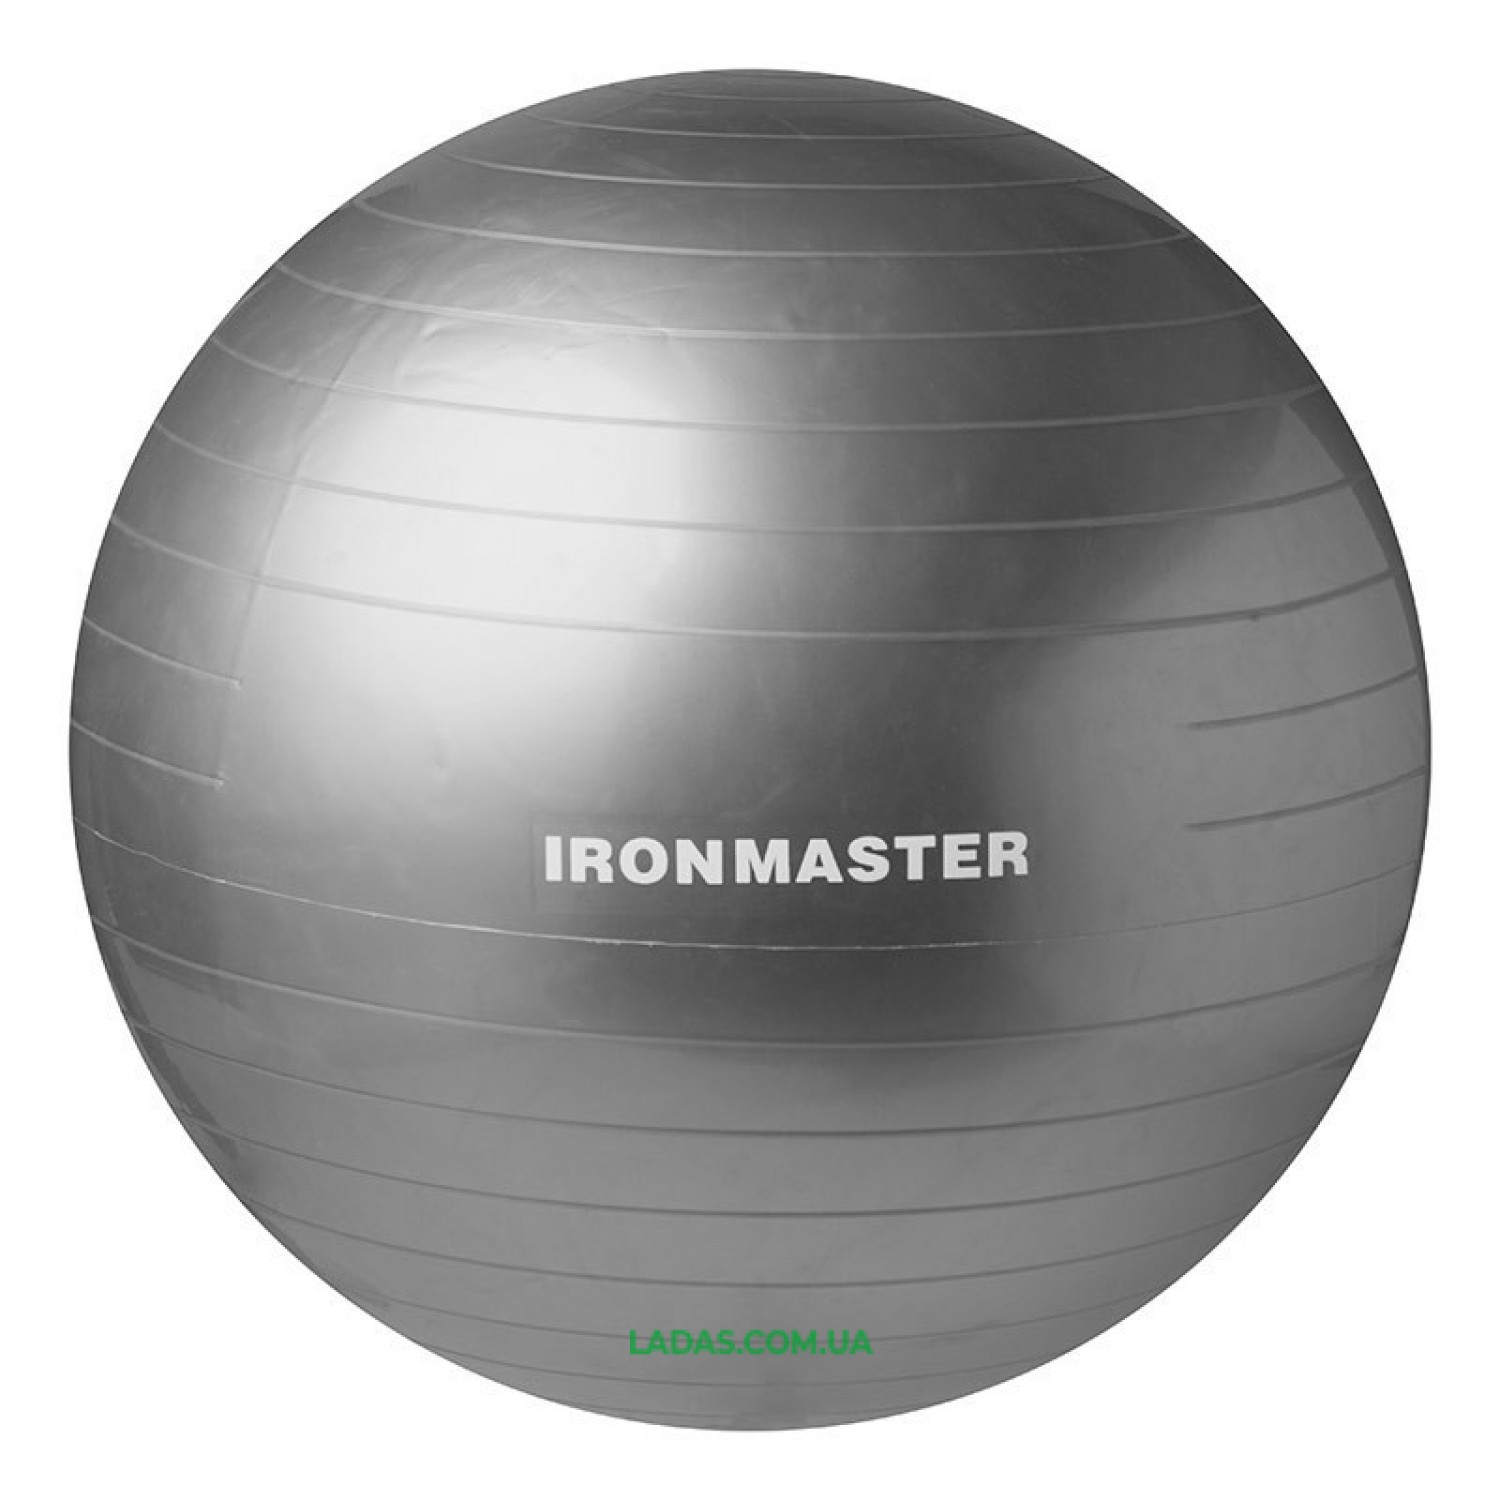 Мяч для фитнеса (фитбол) IronMaster (диаметр 75 см)